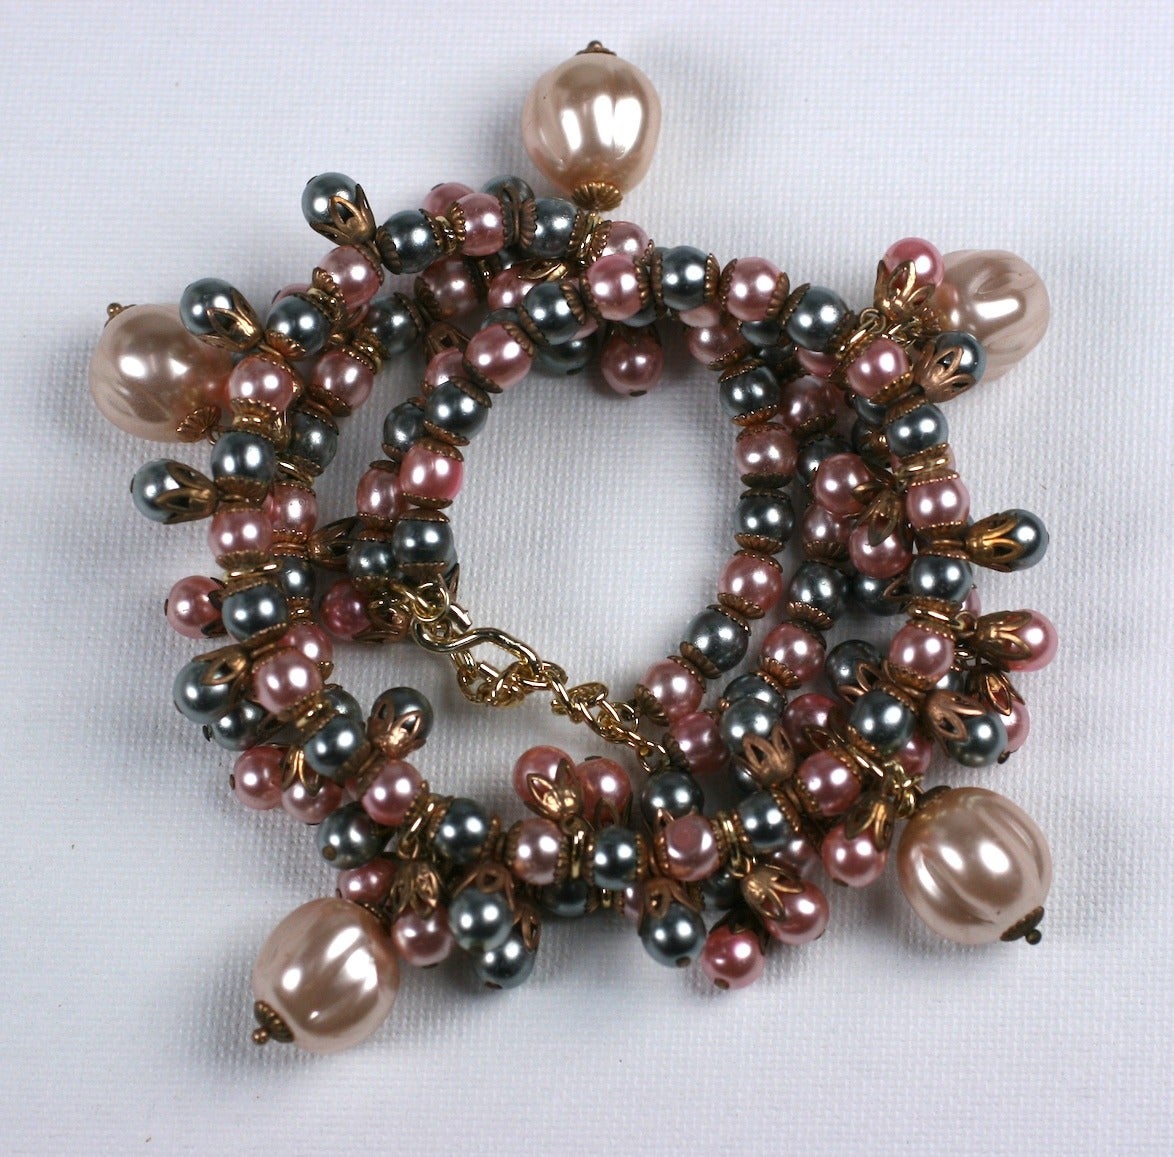 Louis Rousselet Parure aus cremefarbenen, blassrosa und silbergrauen, handgefertigten Rousselet-Perlen. Bestehend aus einer zweisträngigen, flexiblen Halskette auf Metalldraht, einem zweisträngigen, flexiblen Wickelarmband und langen Perlenclustern